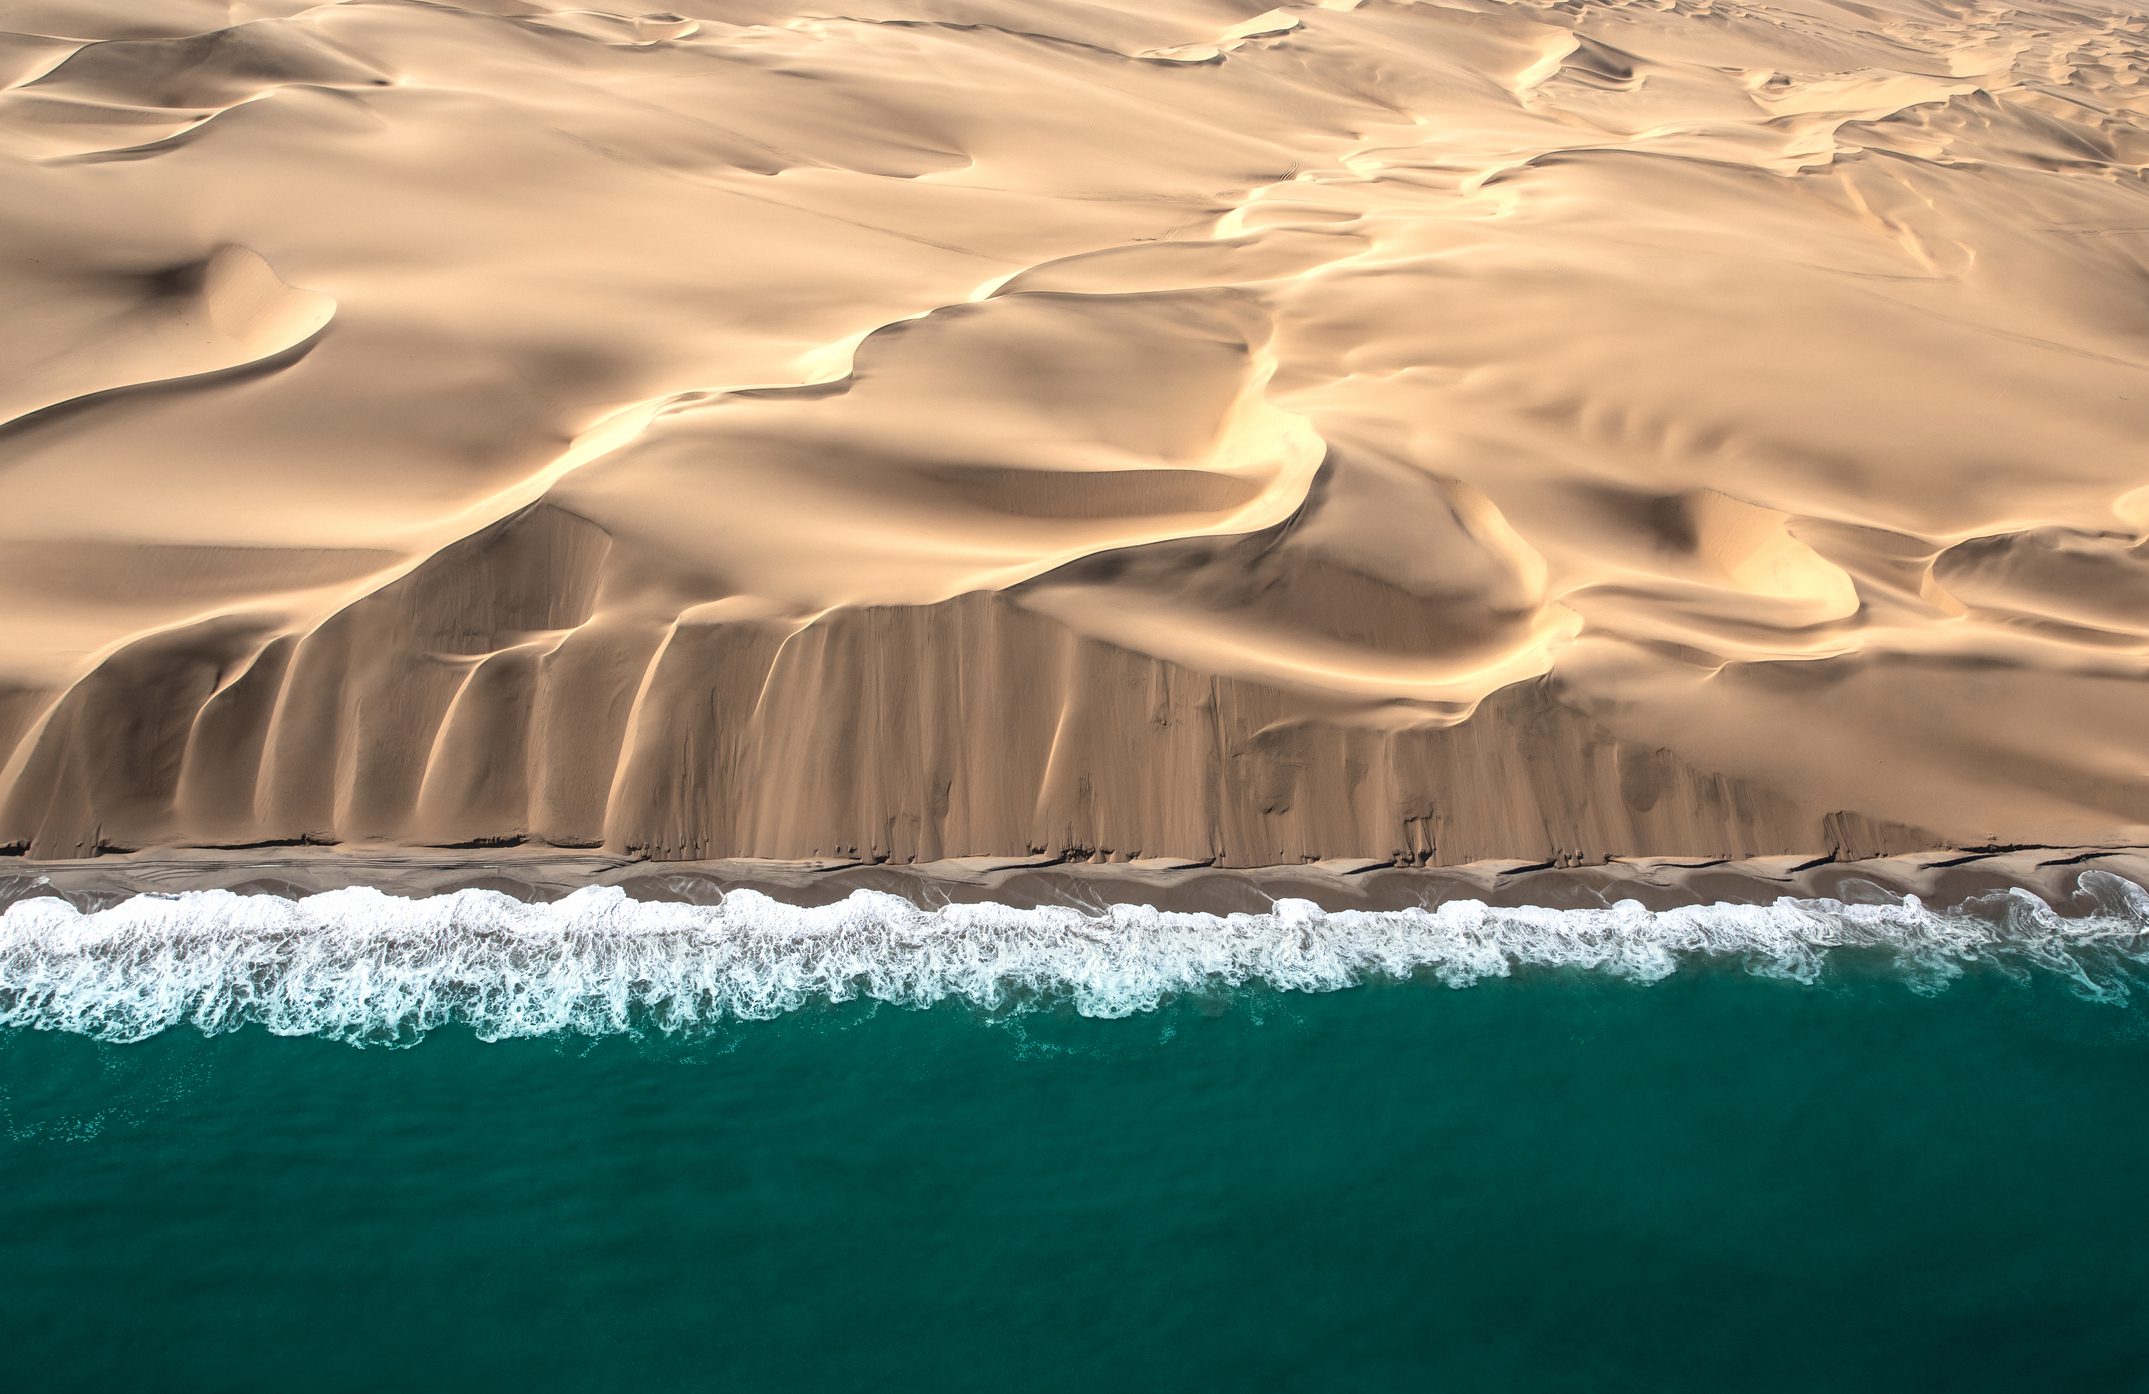 Aerial view of Skeleton coast dunes meeting Atlanic ocean.